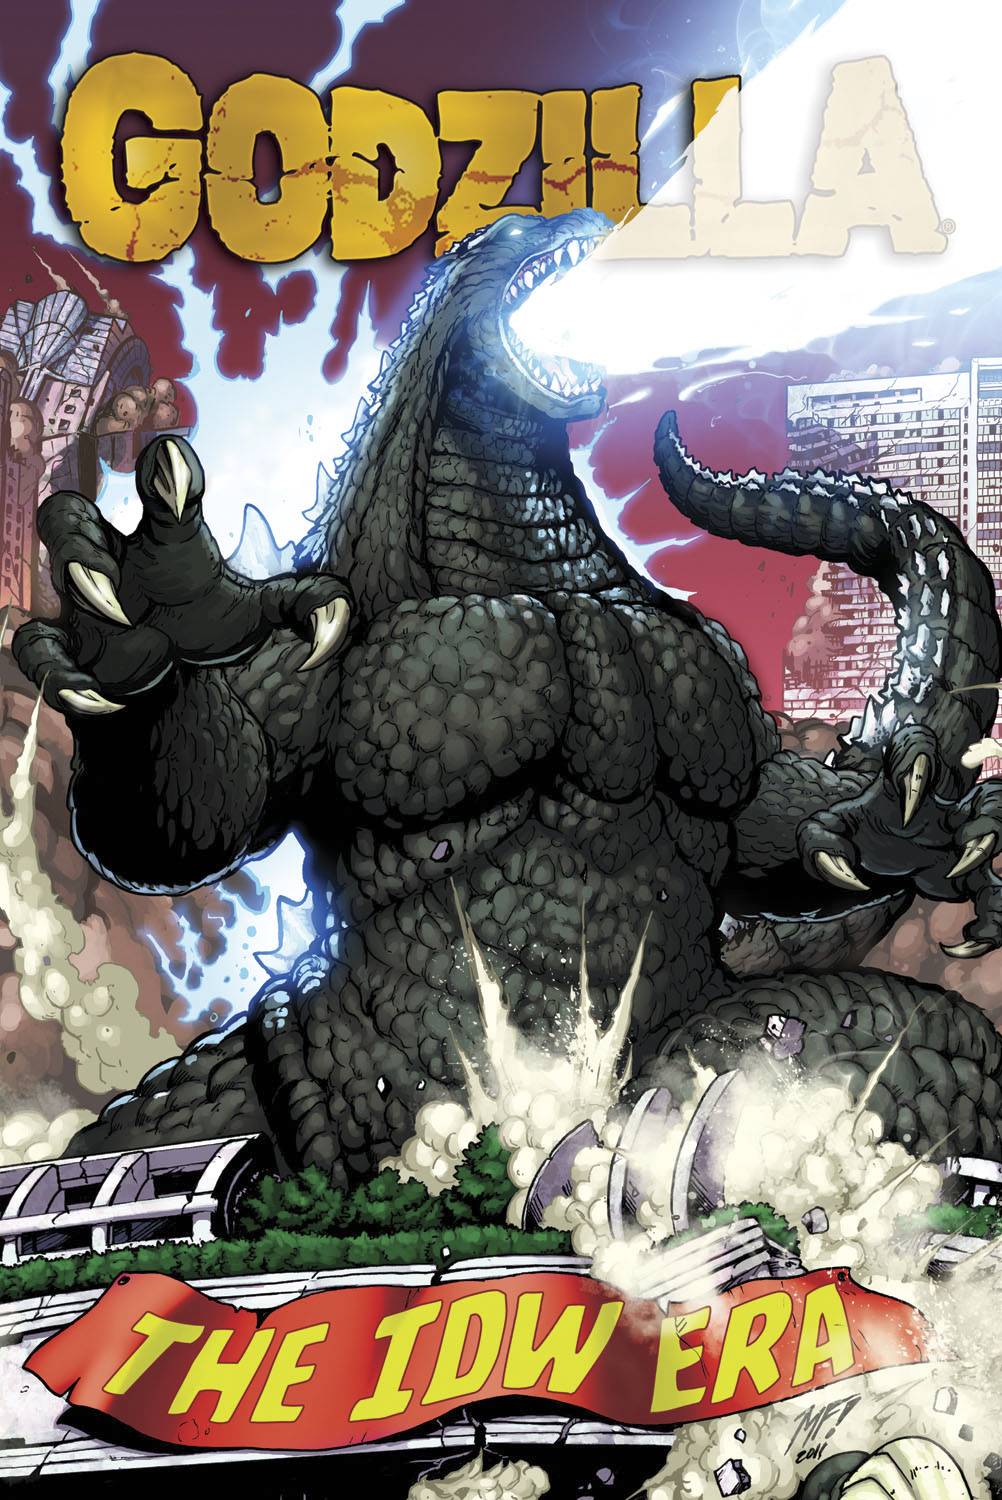 Godzilla IDW Era